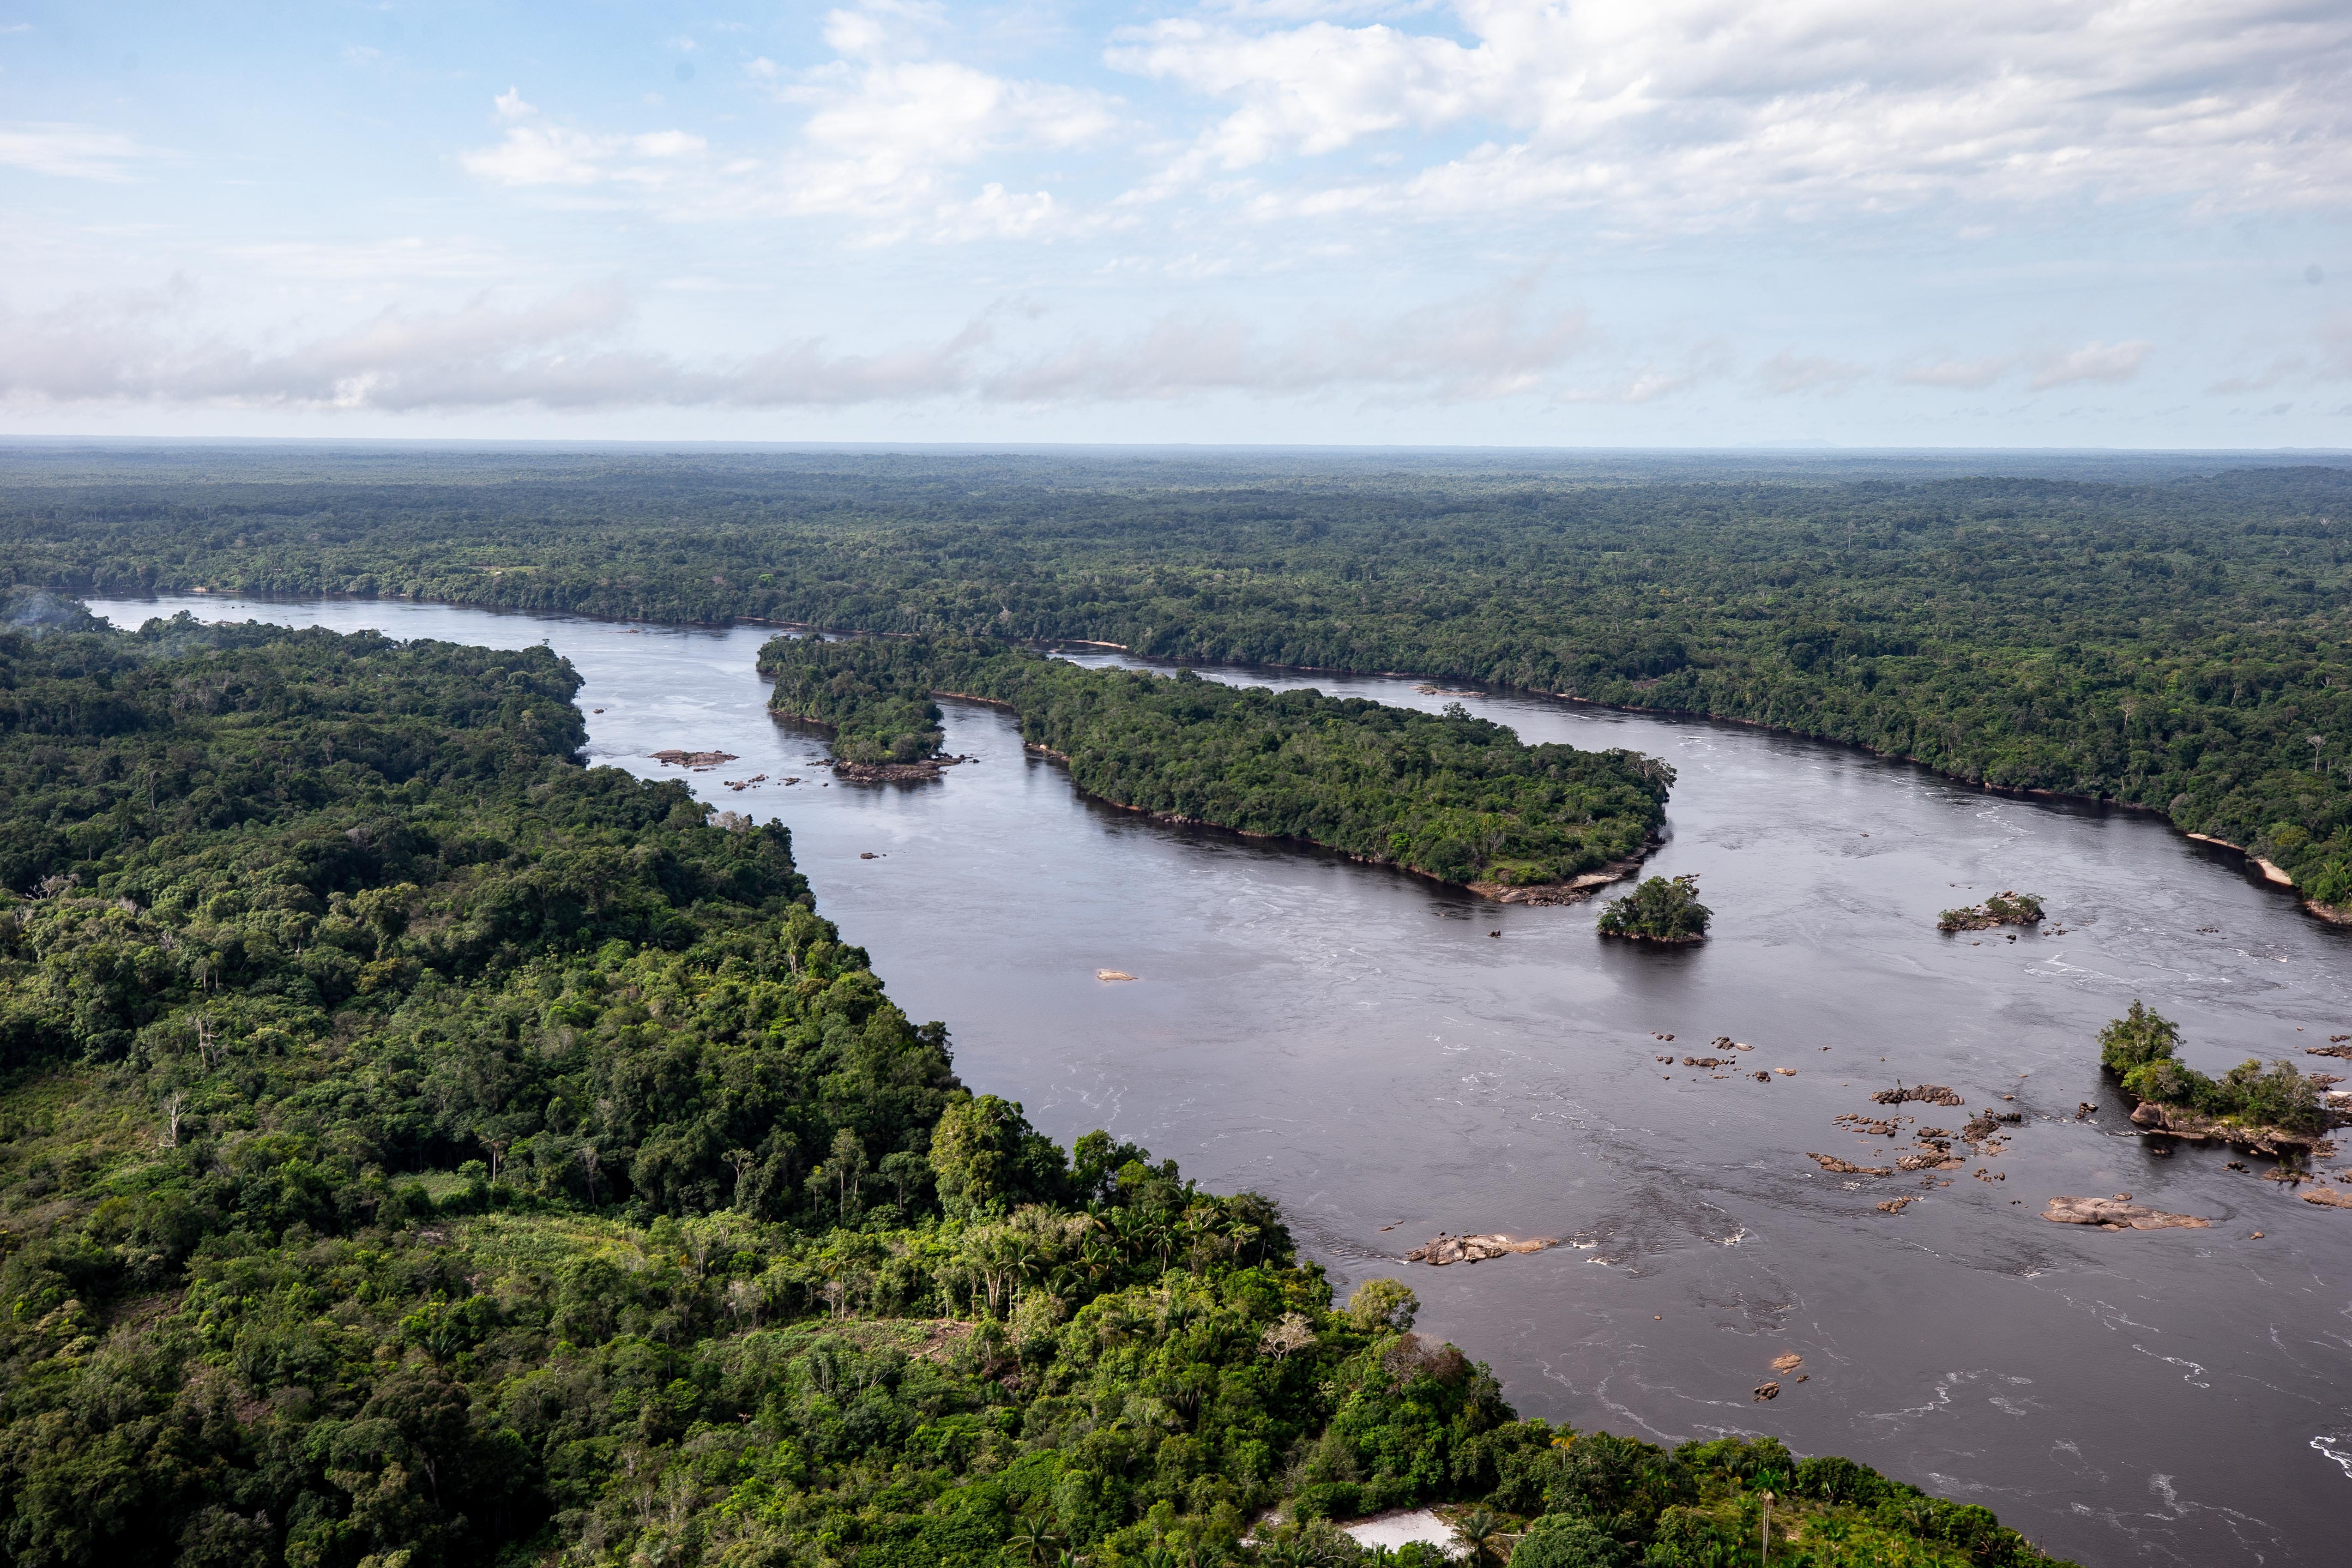 Acuerdo de Escazú: una oportunidad para consolidar la democracia ambiental en América Latina y el Caribe